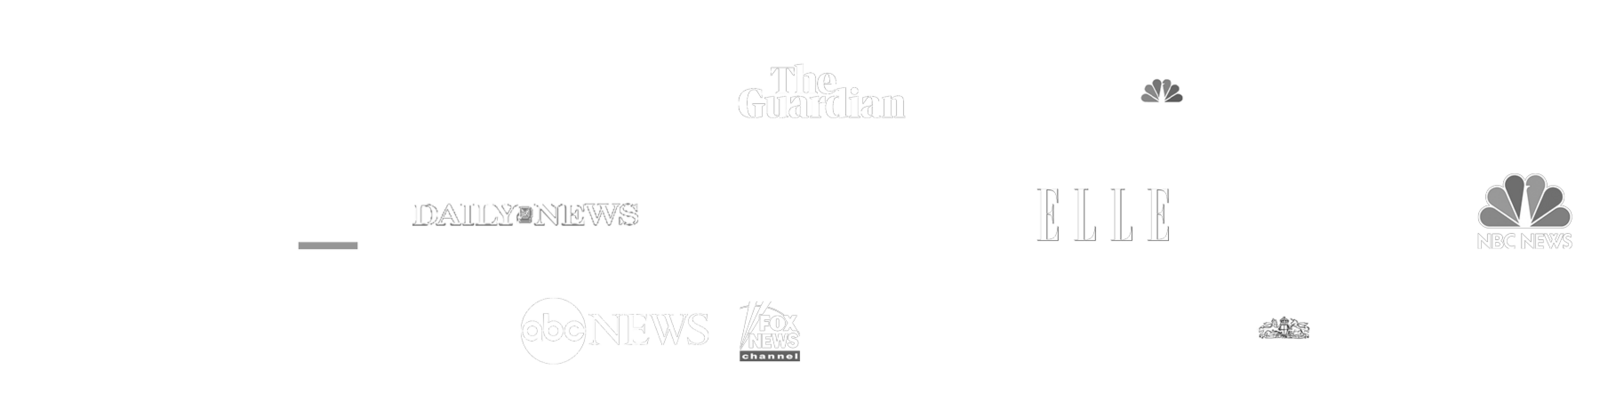 News logos